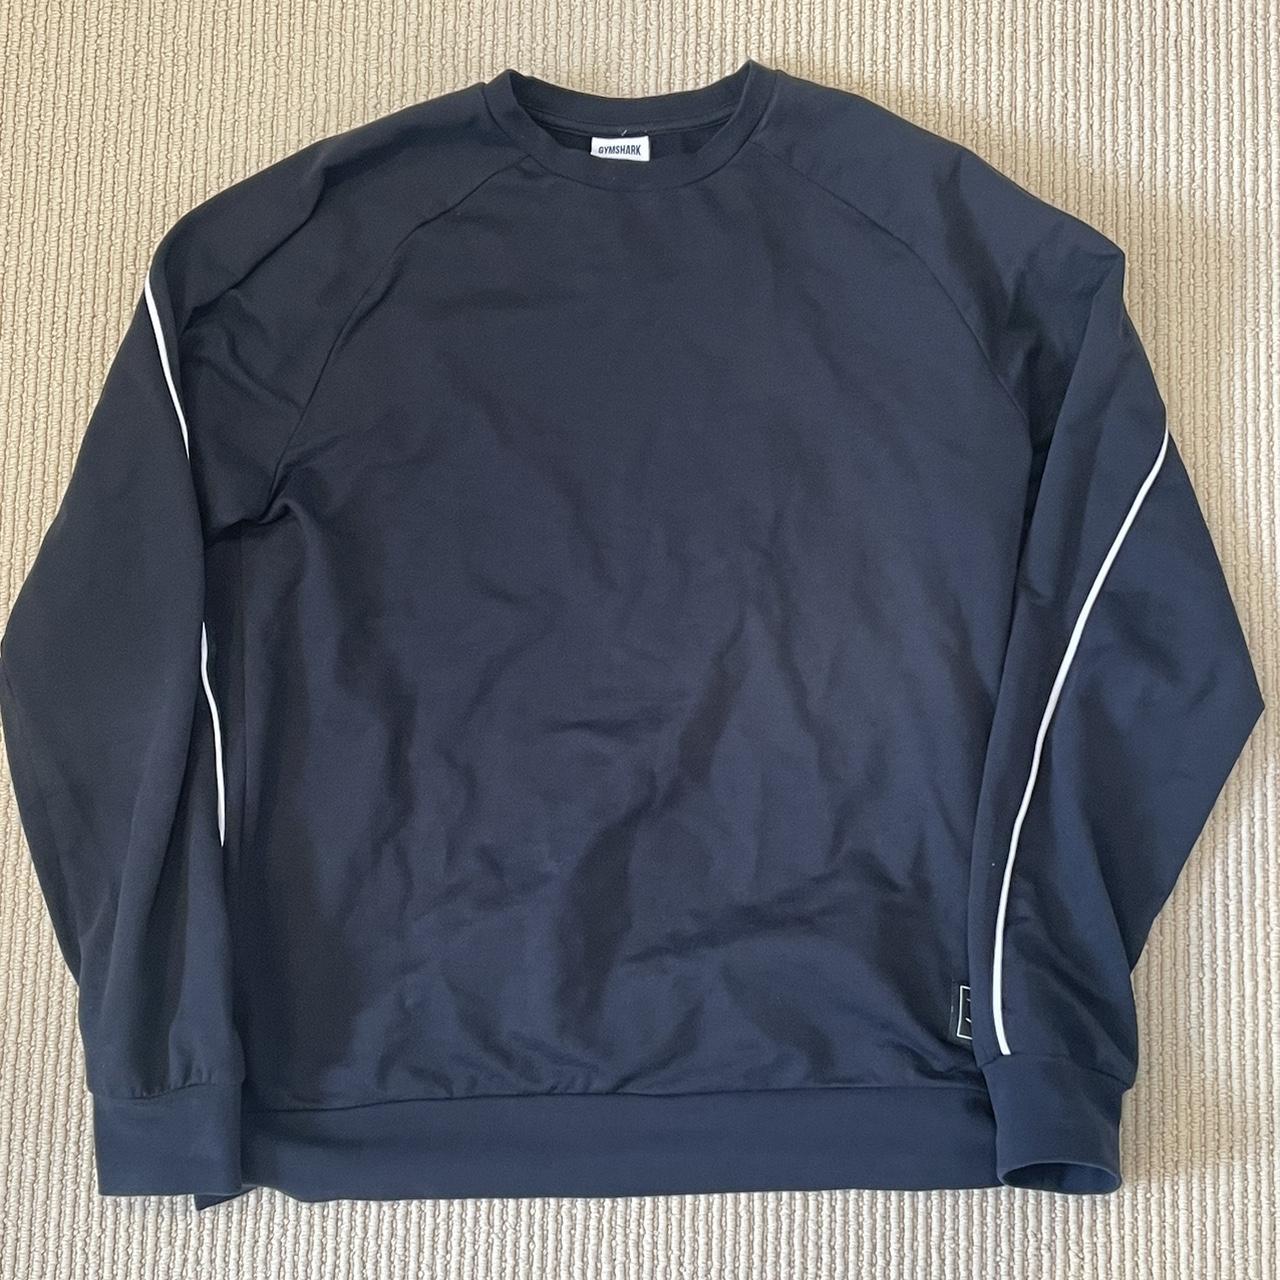 Gymshark Recess Crew Sweatshirt BLACK SET Sweater: - Depop